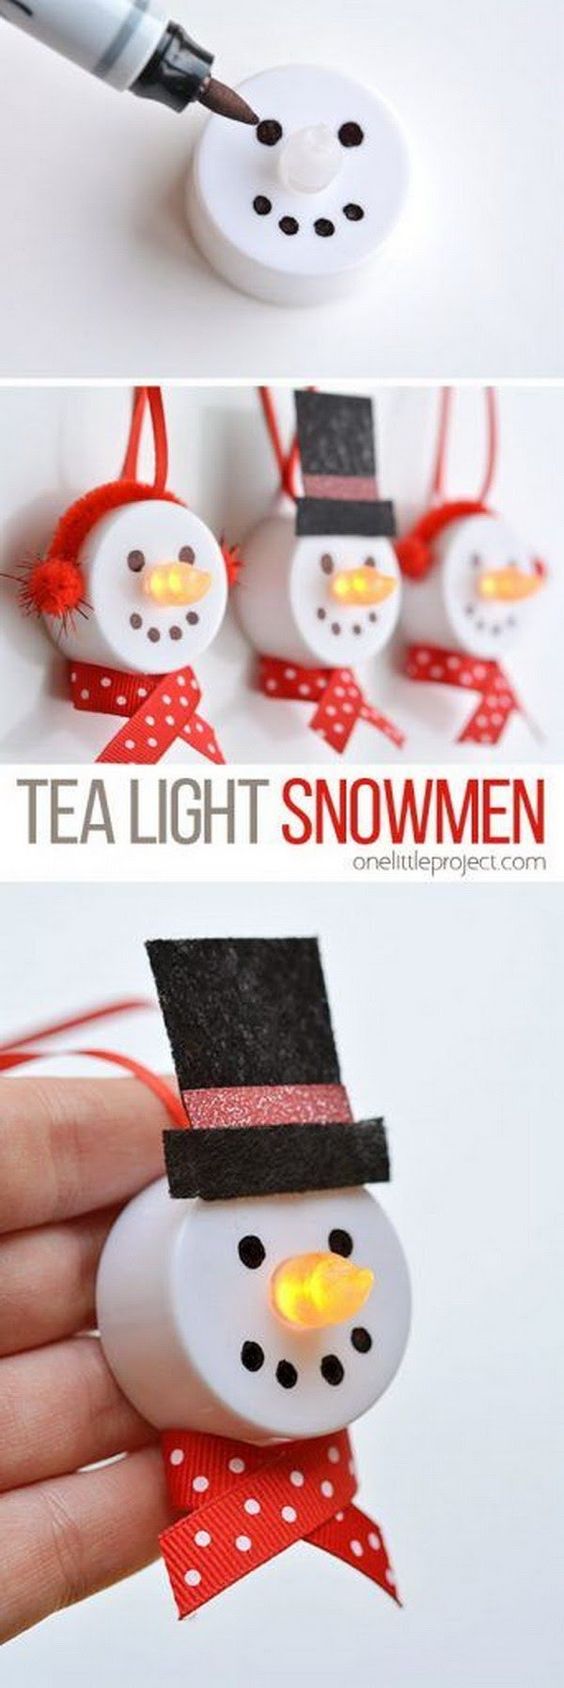 Schneemänner aus Teelichtern - Süß für Weihnachten